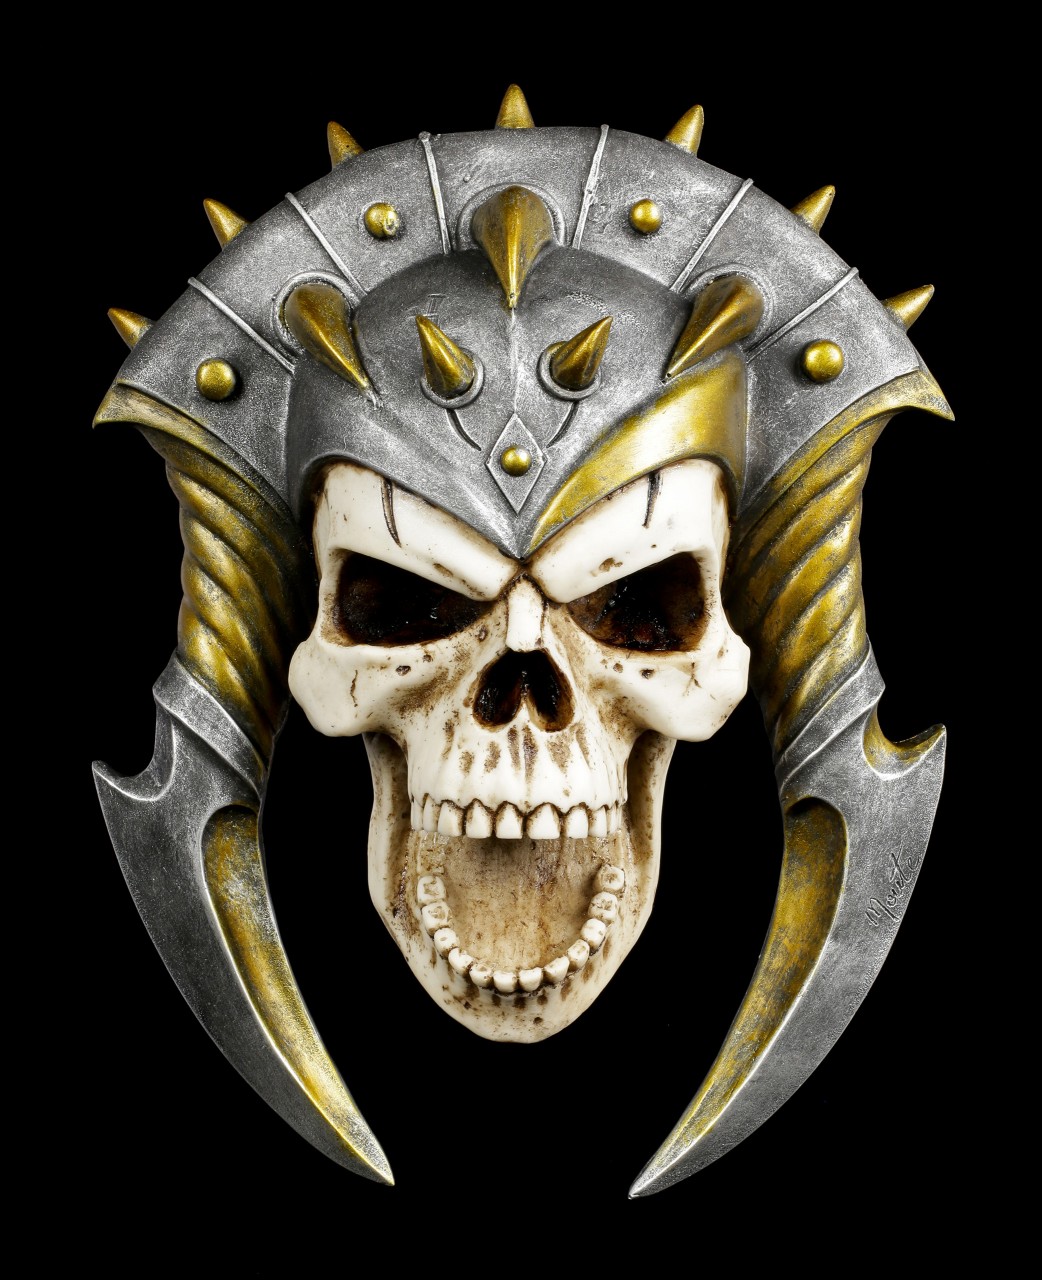 Skull Wall Ornament - Demons Bane